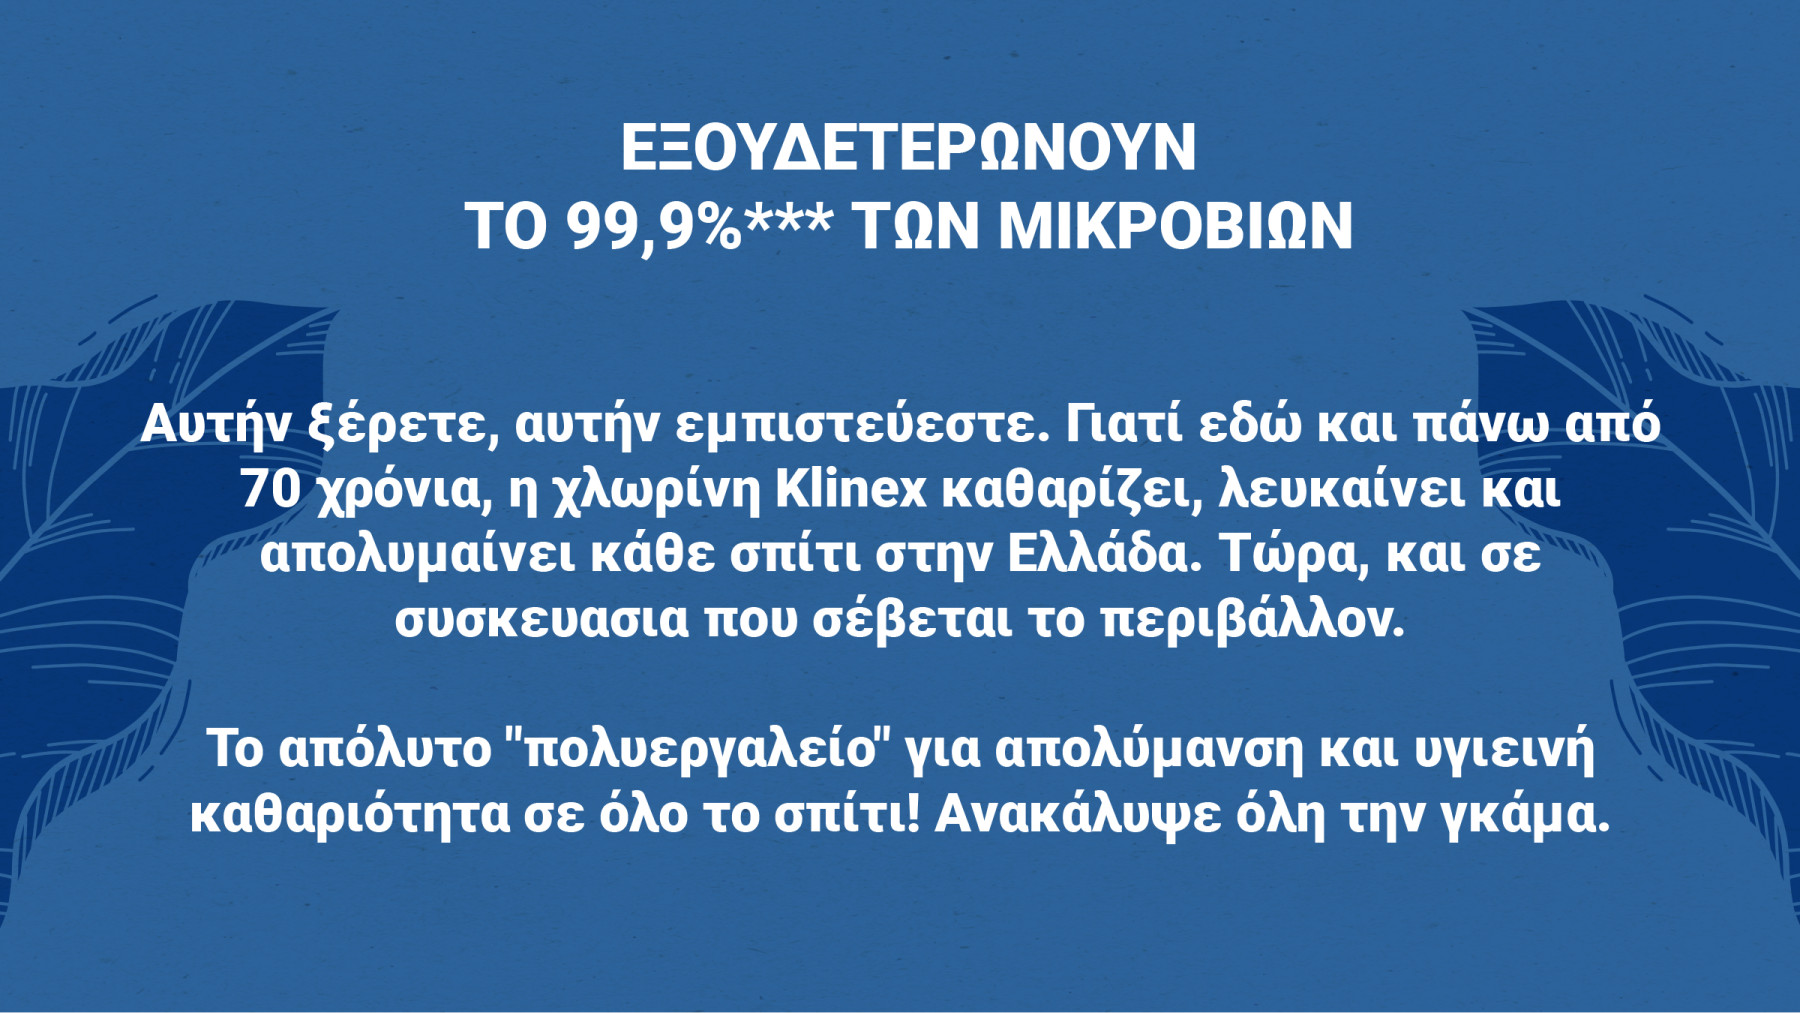 Αυτήν ξέρετε, αυτήν εμπιστεύεστε. Γιατί εδώ και πάνω από 70 χρόνια, η χλωρίνη Klinex καθαρίζει, λευκαίνει και απολυμαίνει κάθε σπίτι στην Ελλάδα. Τώρα, και σε συσκευασία που σέβεται το περιβάλλον.